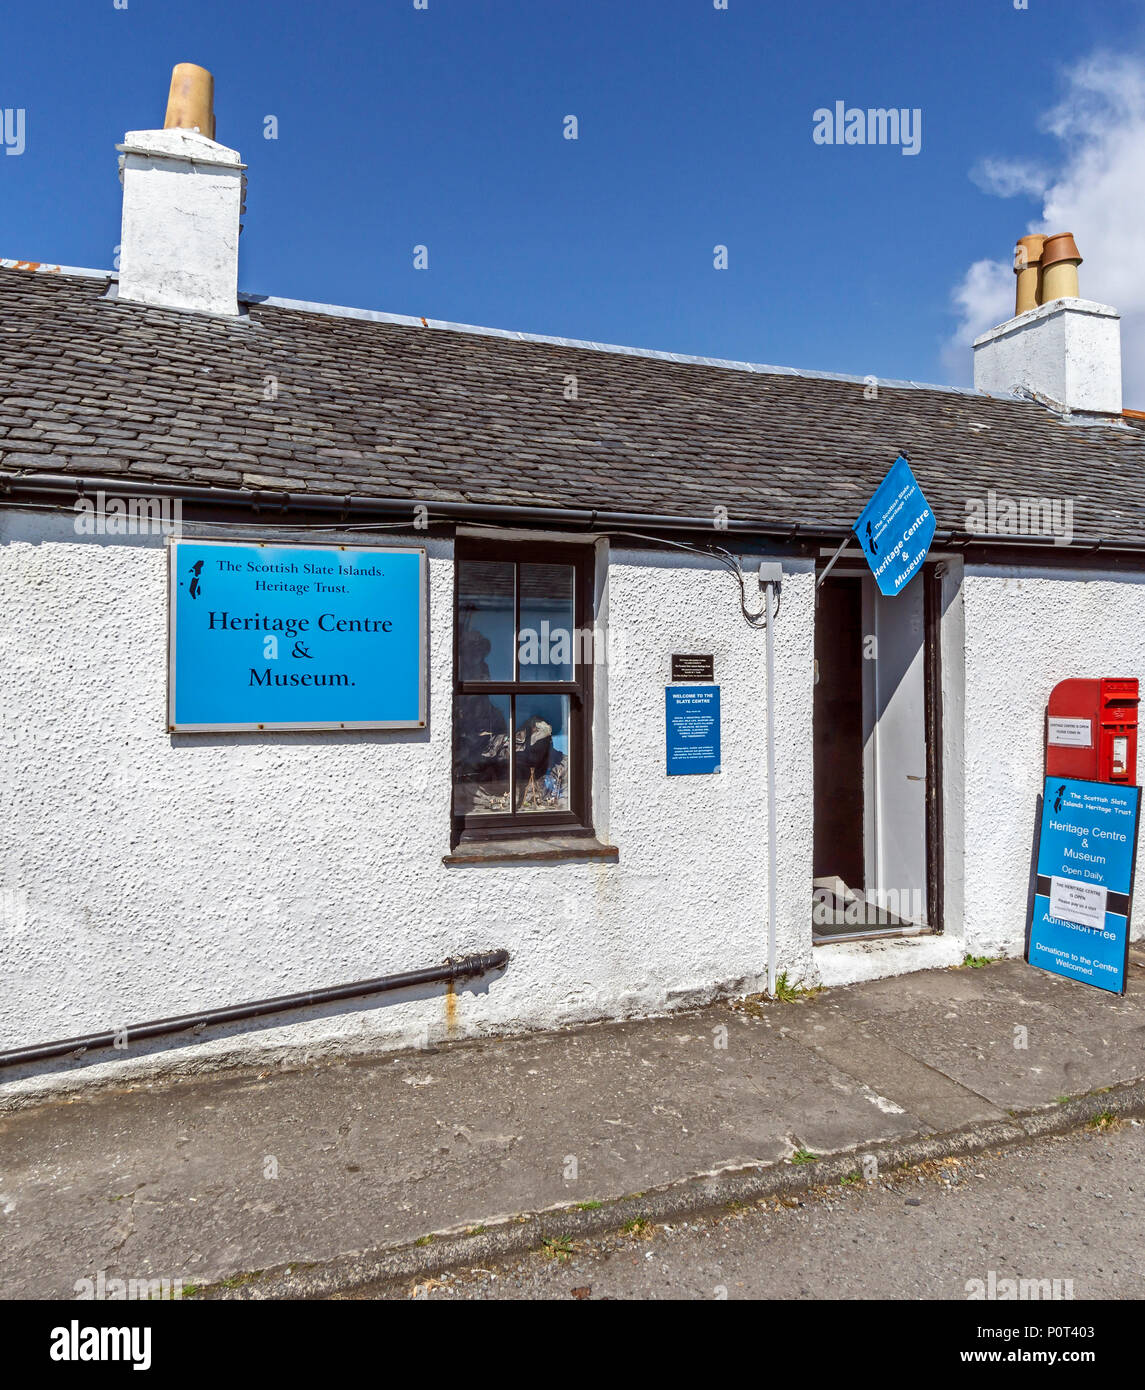 Las islas de pizarra escocés Heritage Trust Heritage Centre & Museo del pueblo de Easdale en la isla de Seil al sur de Oban Argyll & Bute Escocia UK Foto de stock